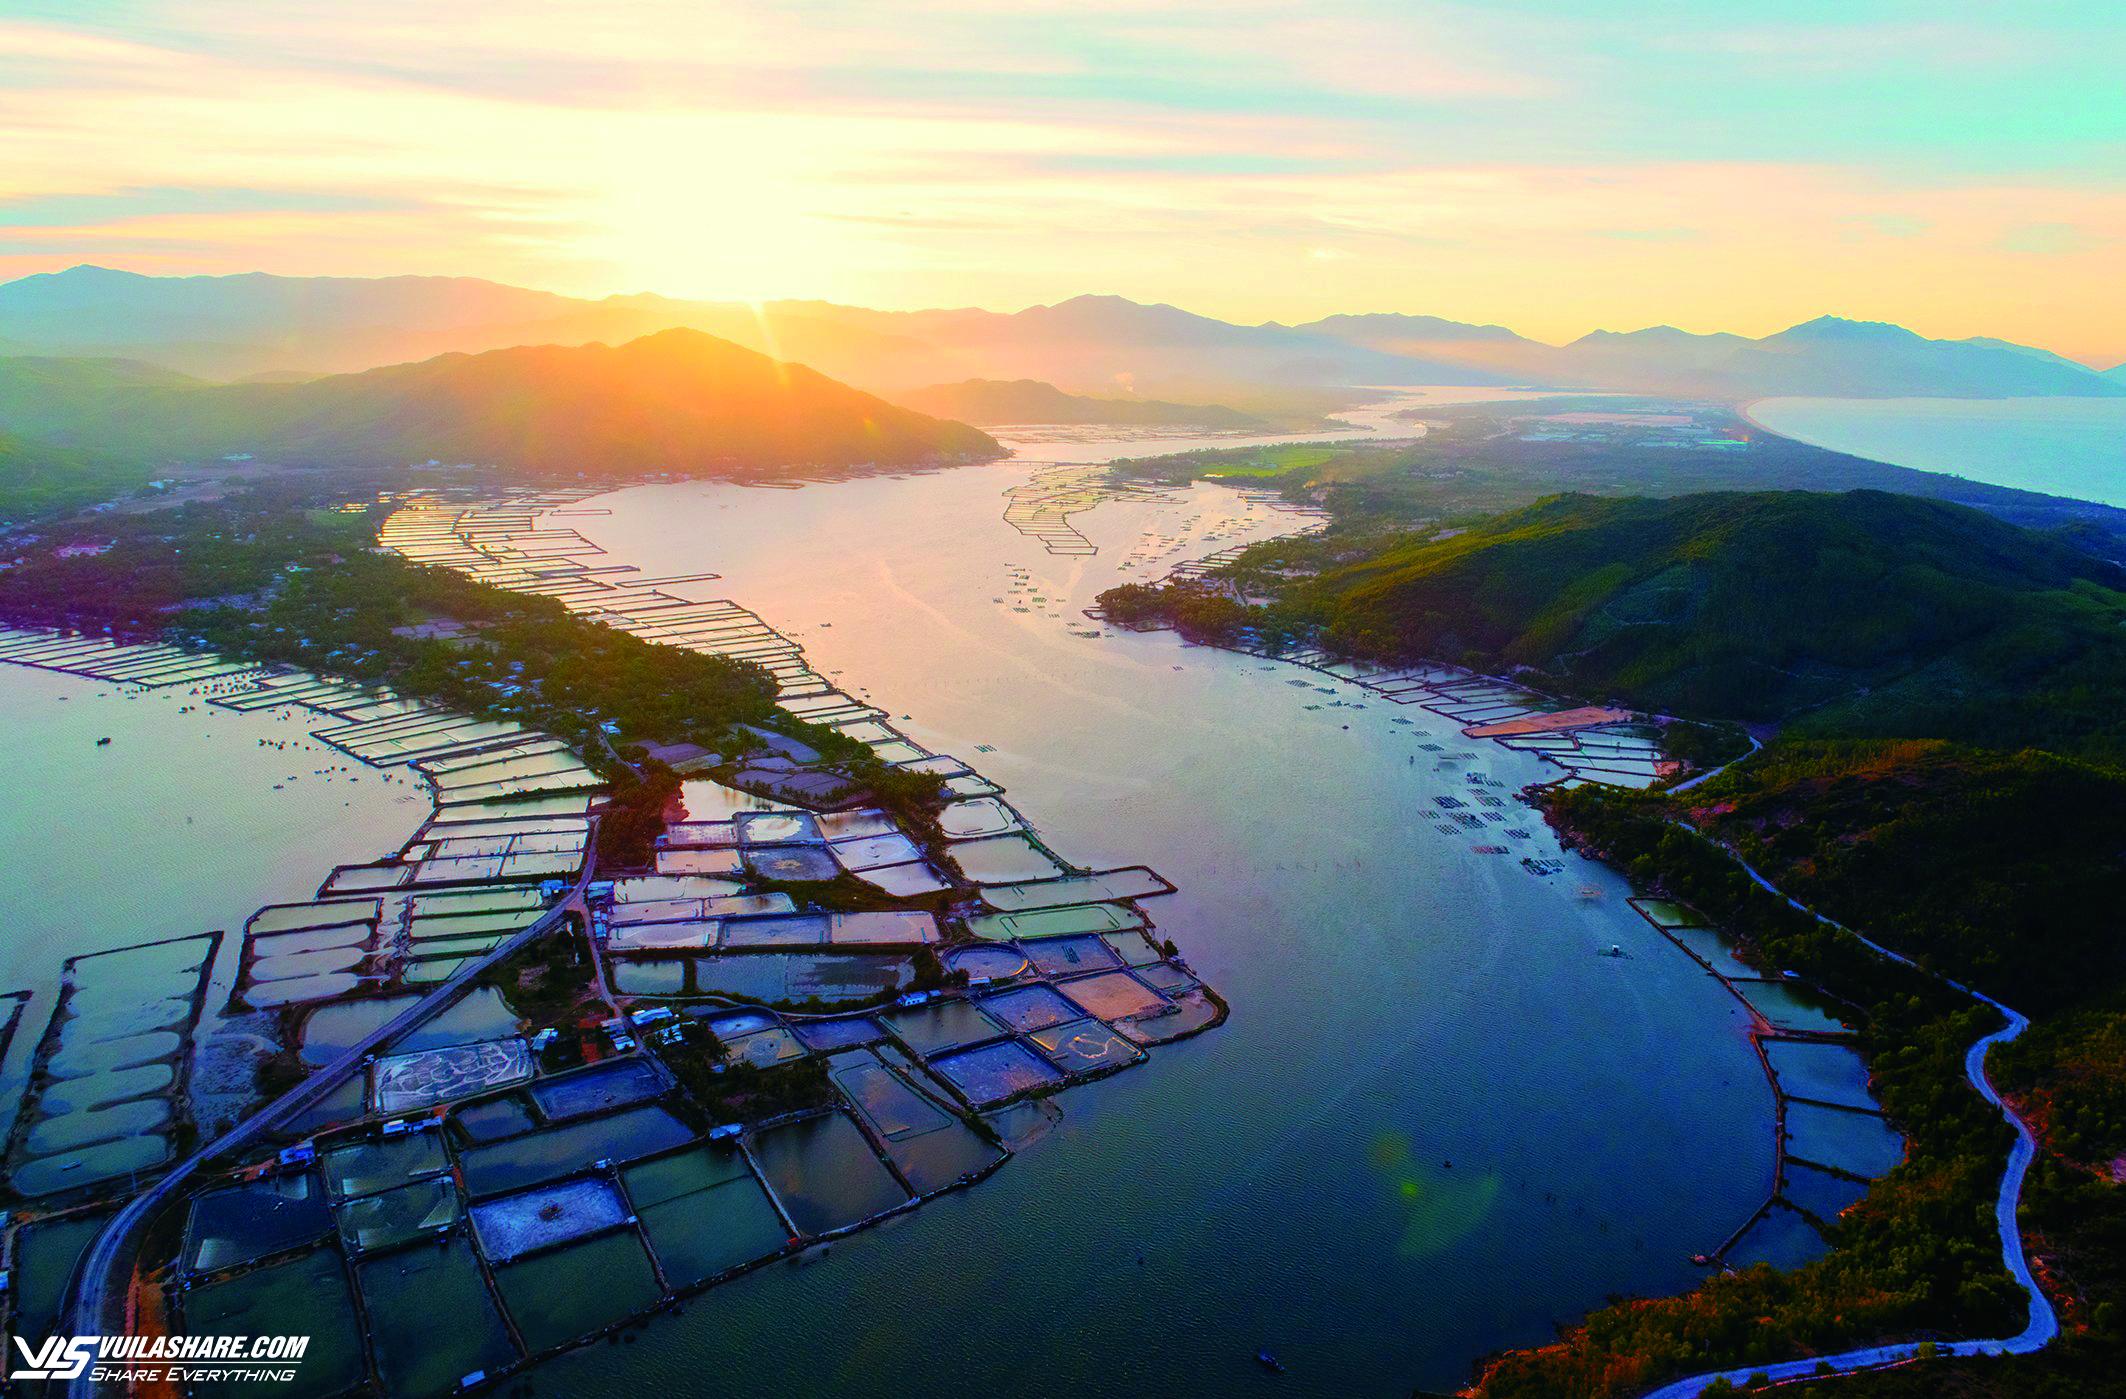 TX.Sông Cầu (Phú Yên): Phát triển du lịch trở thành ngành kinh tế mũi nhọn- Ảnh 2.